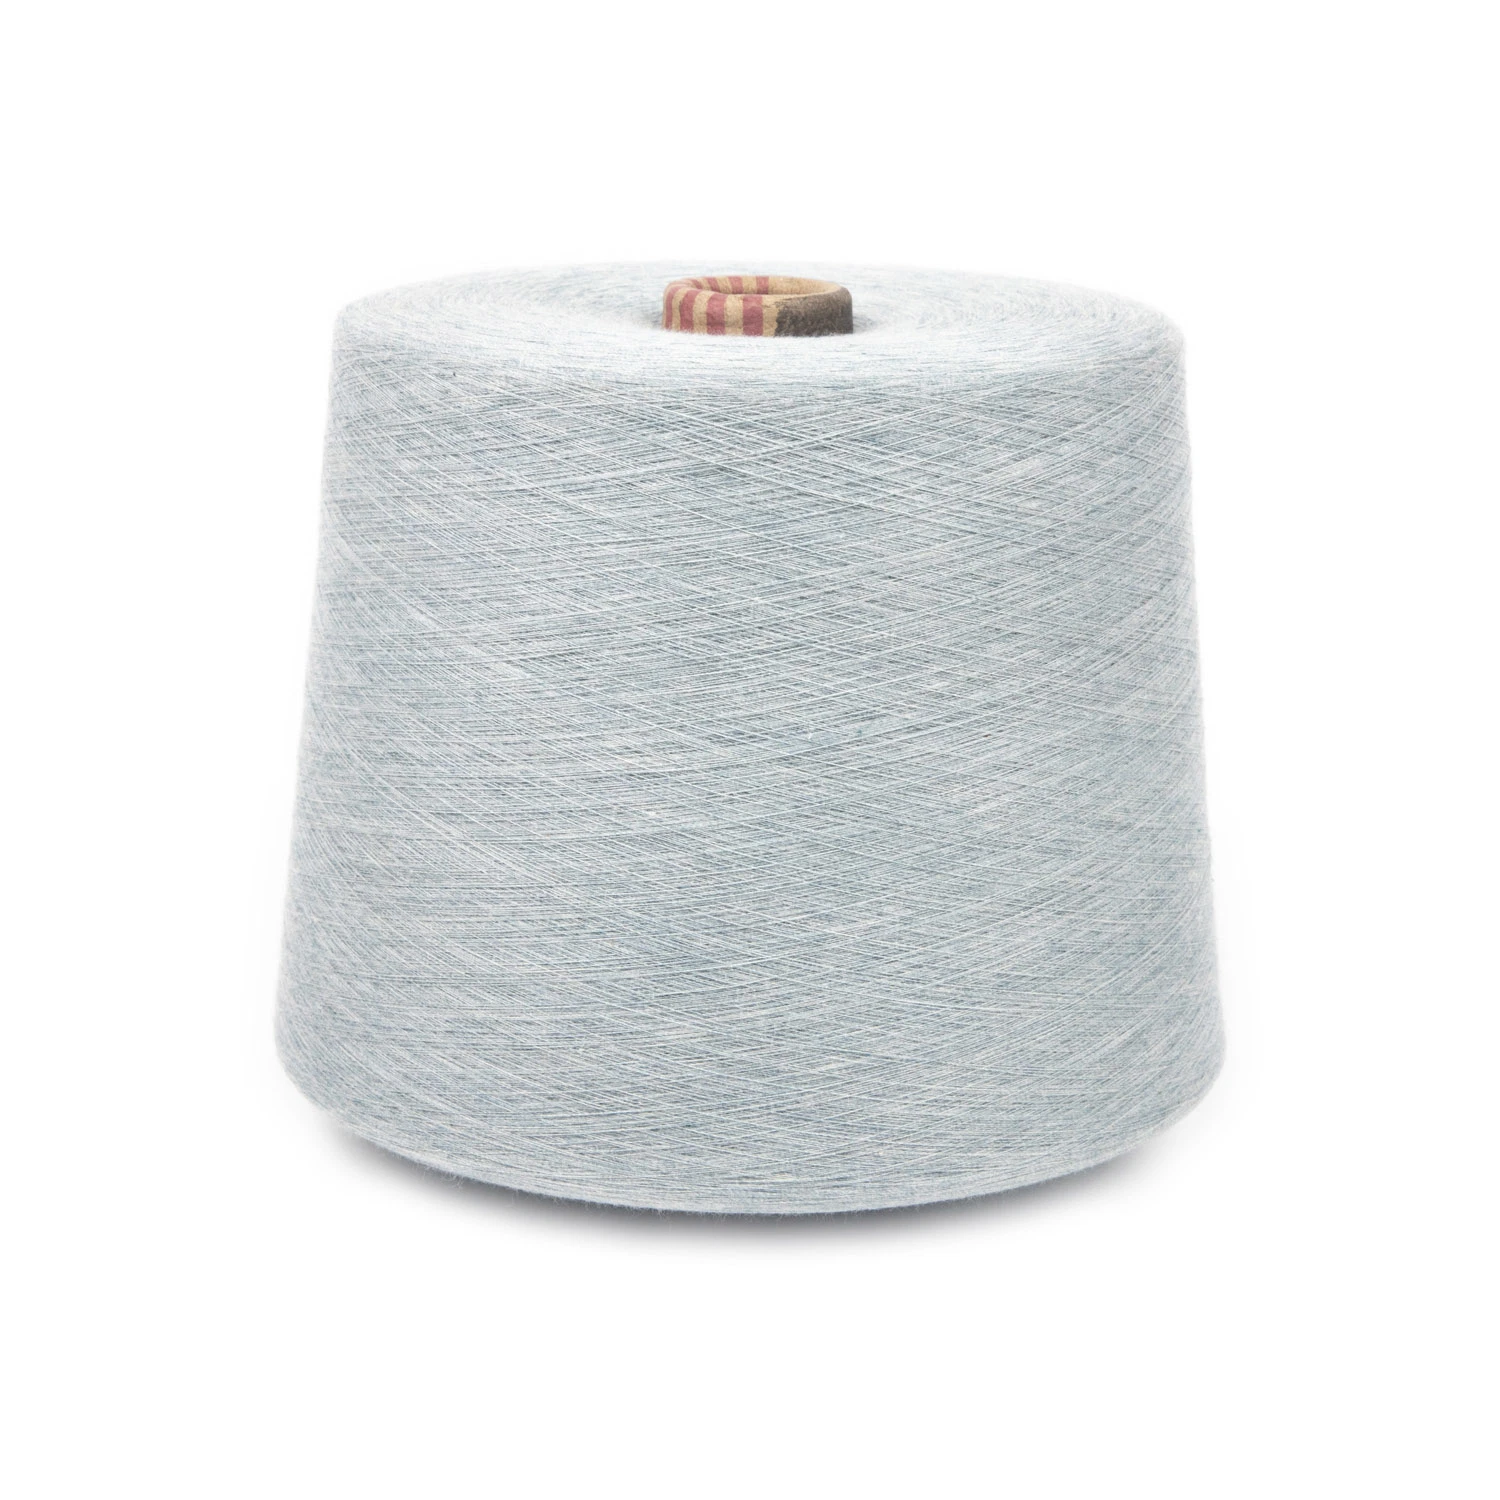 100% algodón peinado teñido de hilados de cono de hilo para tejer y un suéter tejido